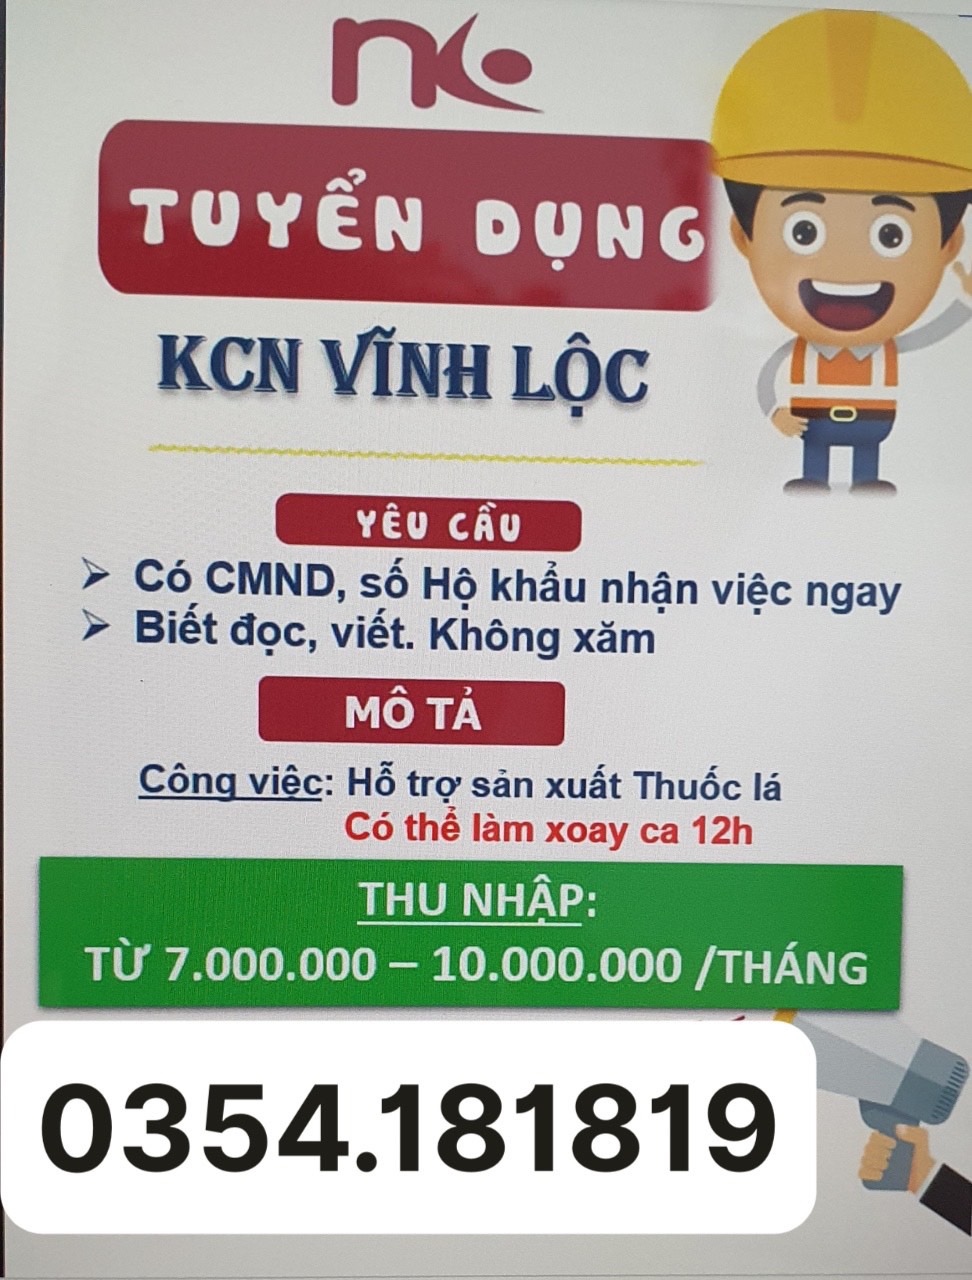 Tuyển LĐPT làm việc tại KCN Vĩnh Lộc